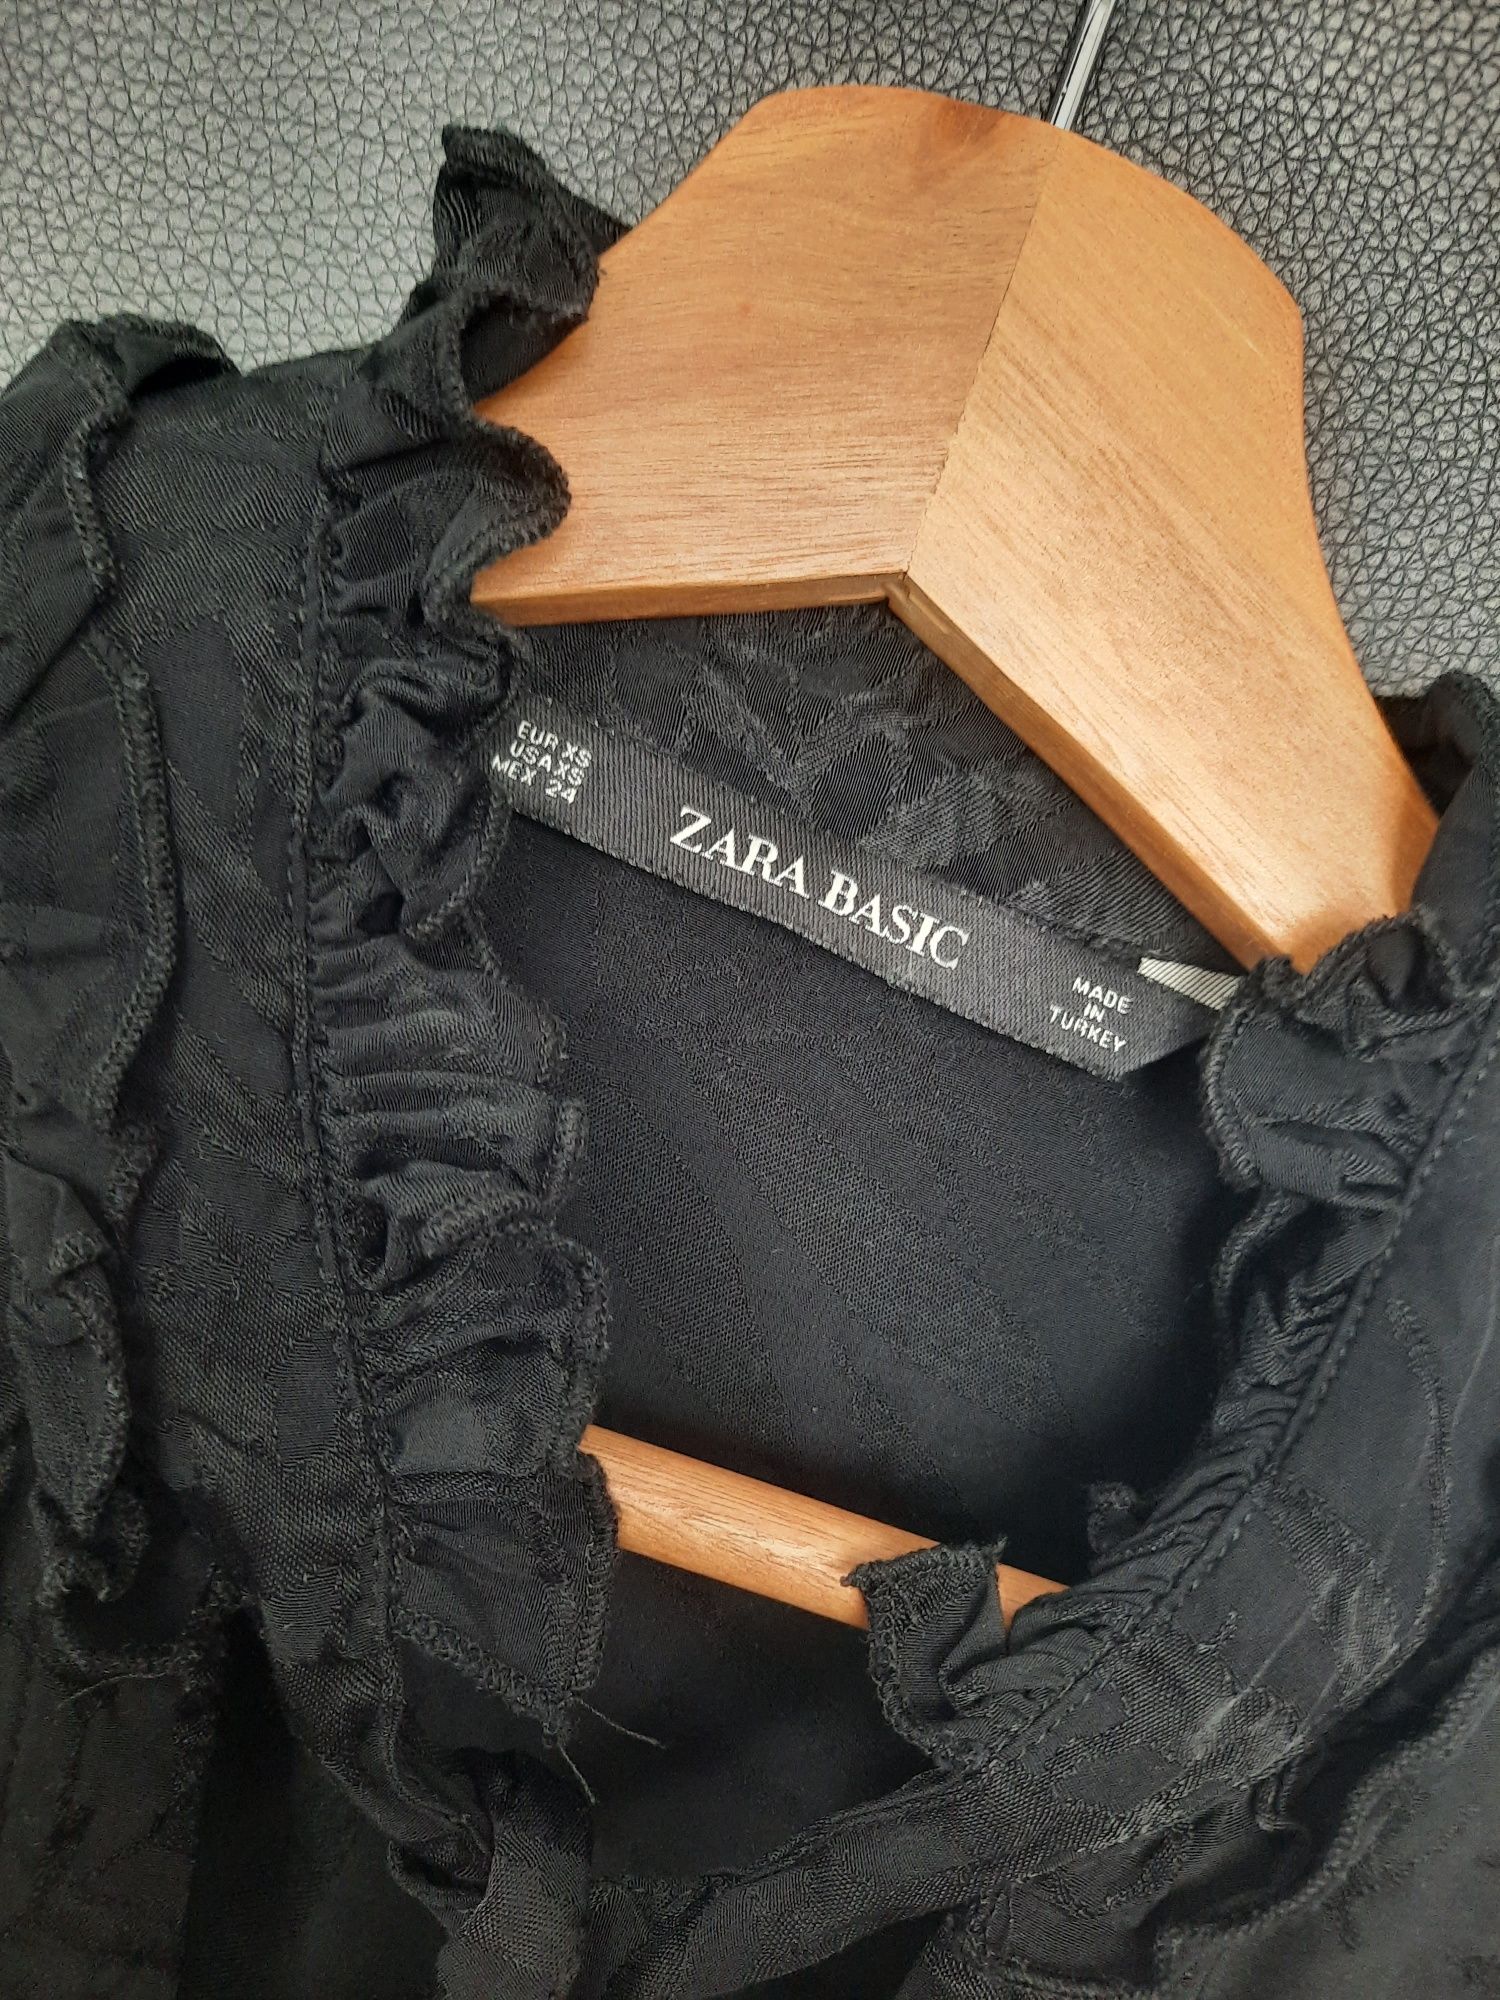 Elegancka koszula Zara XS wiązana przy szyi